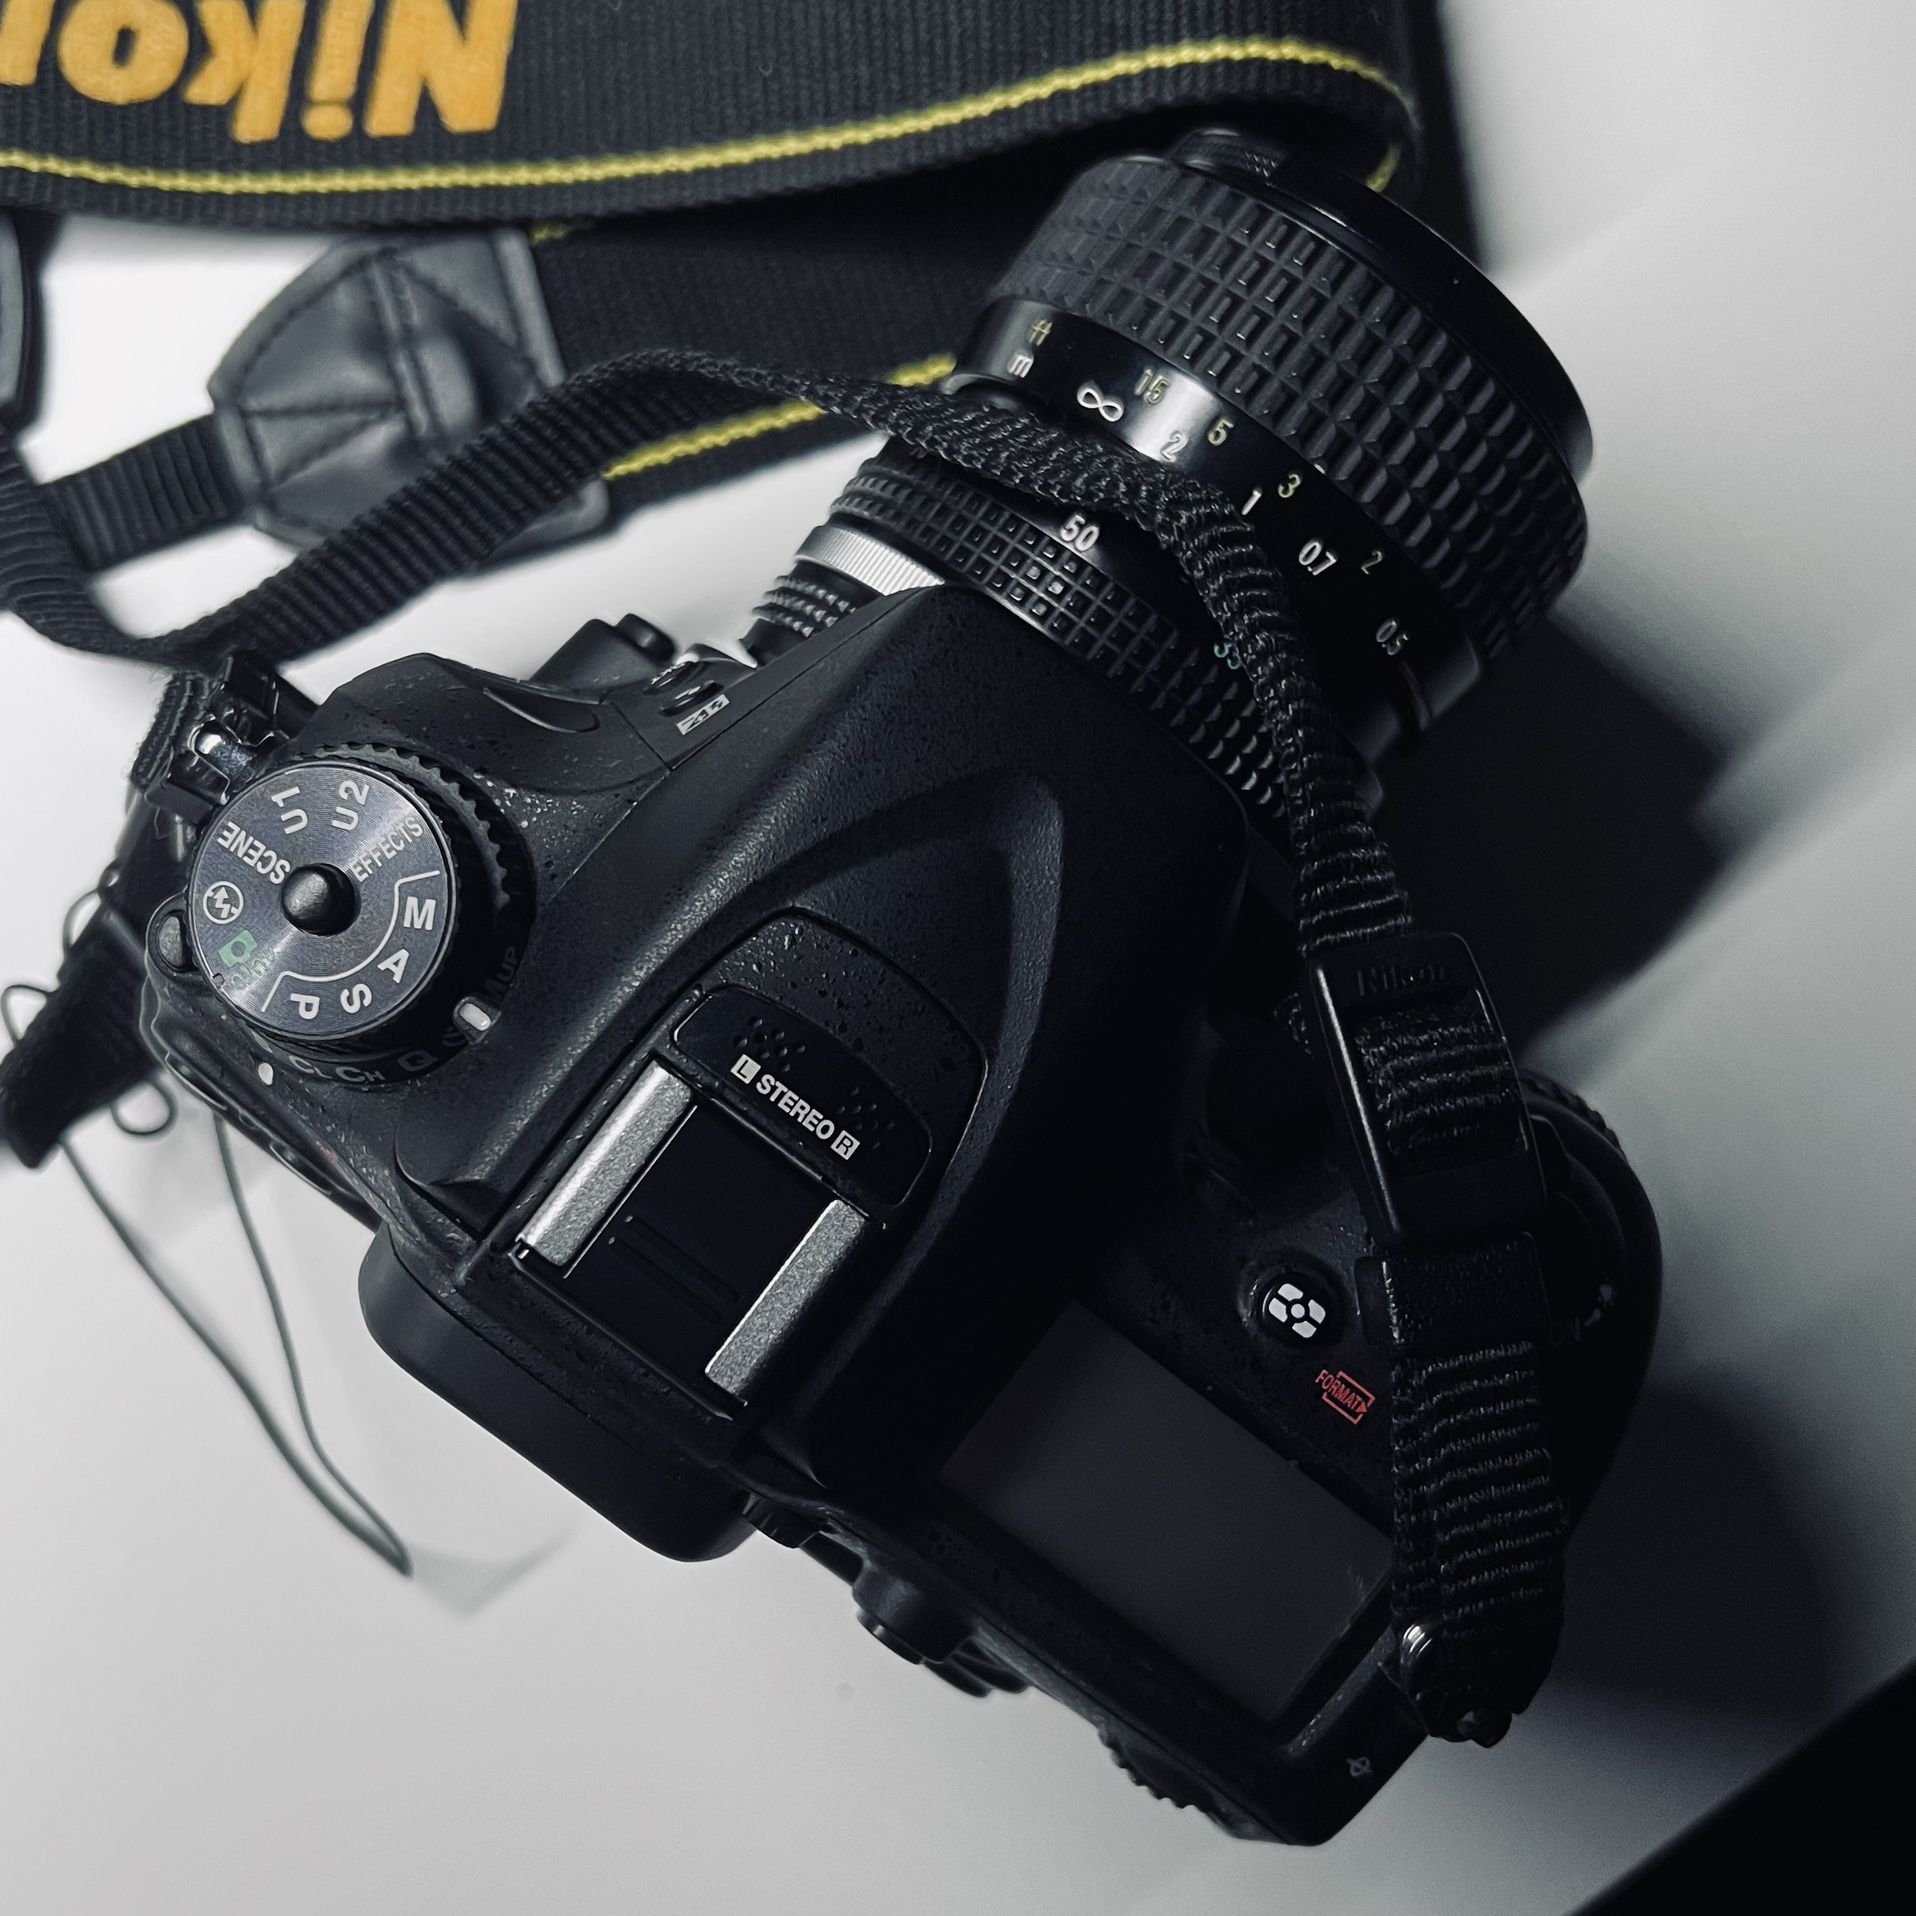 Nikon D7100 Body, Strap, And Four Lenses